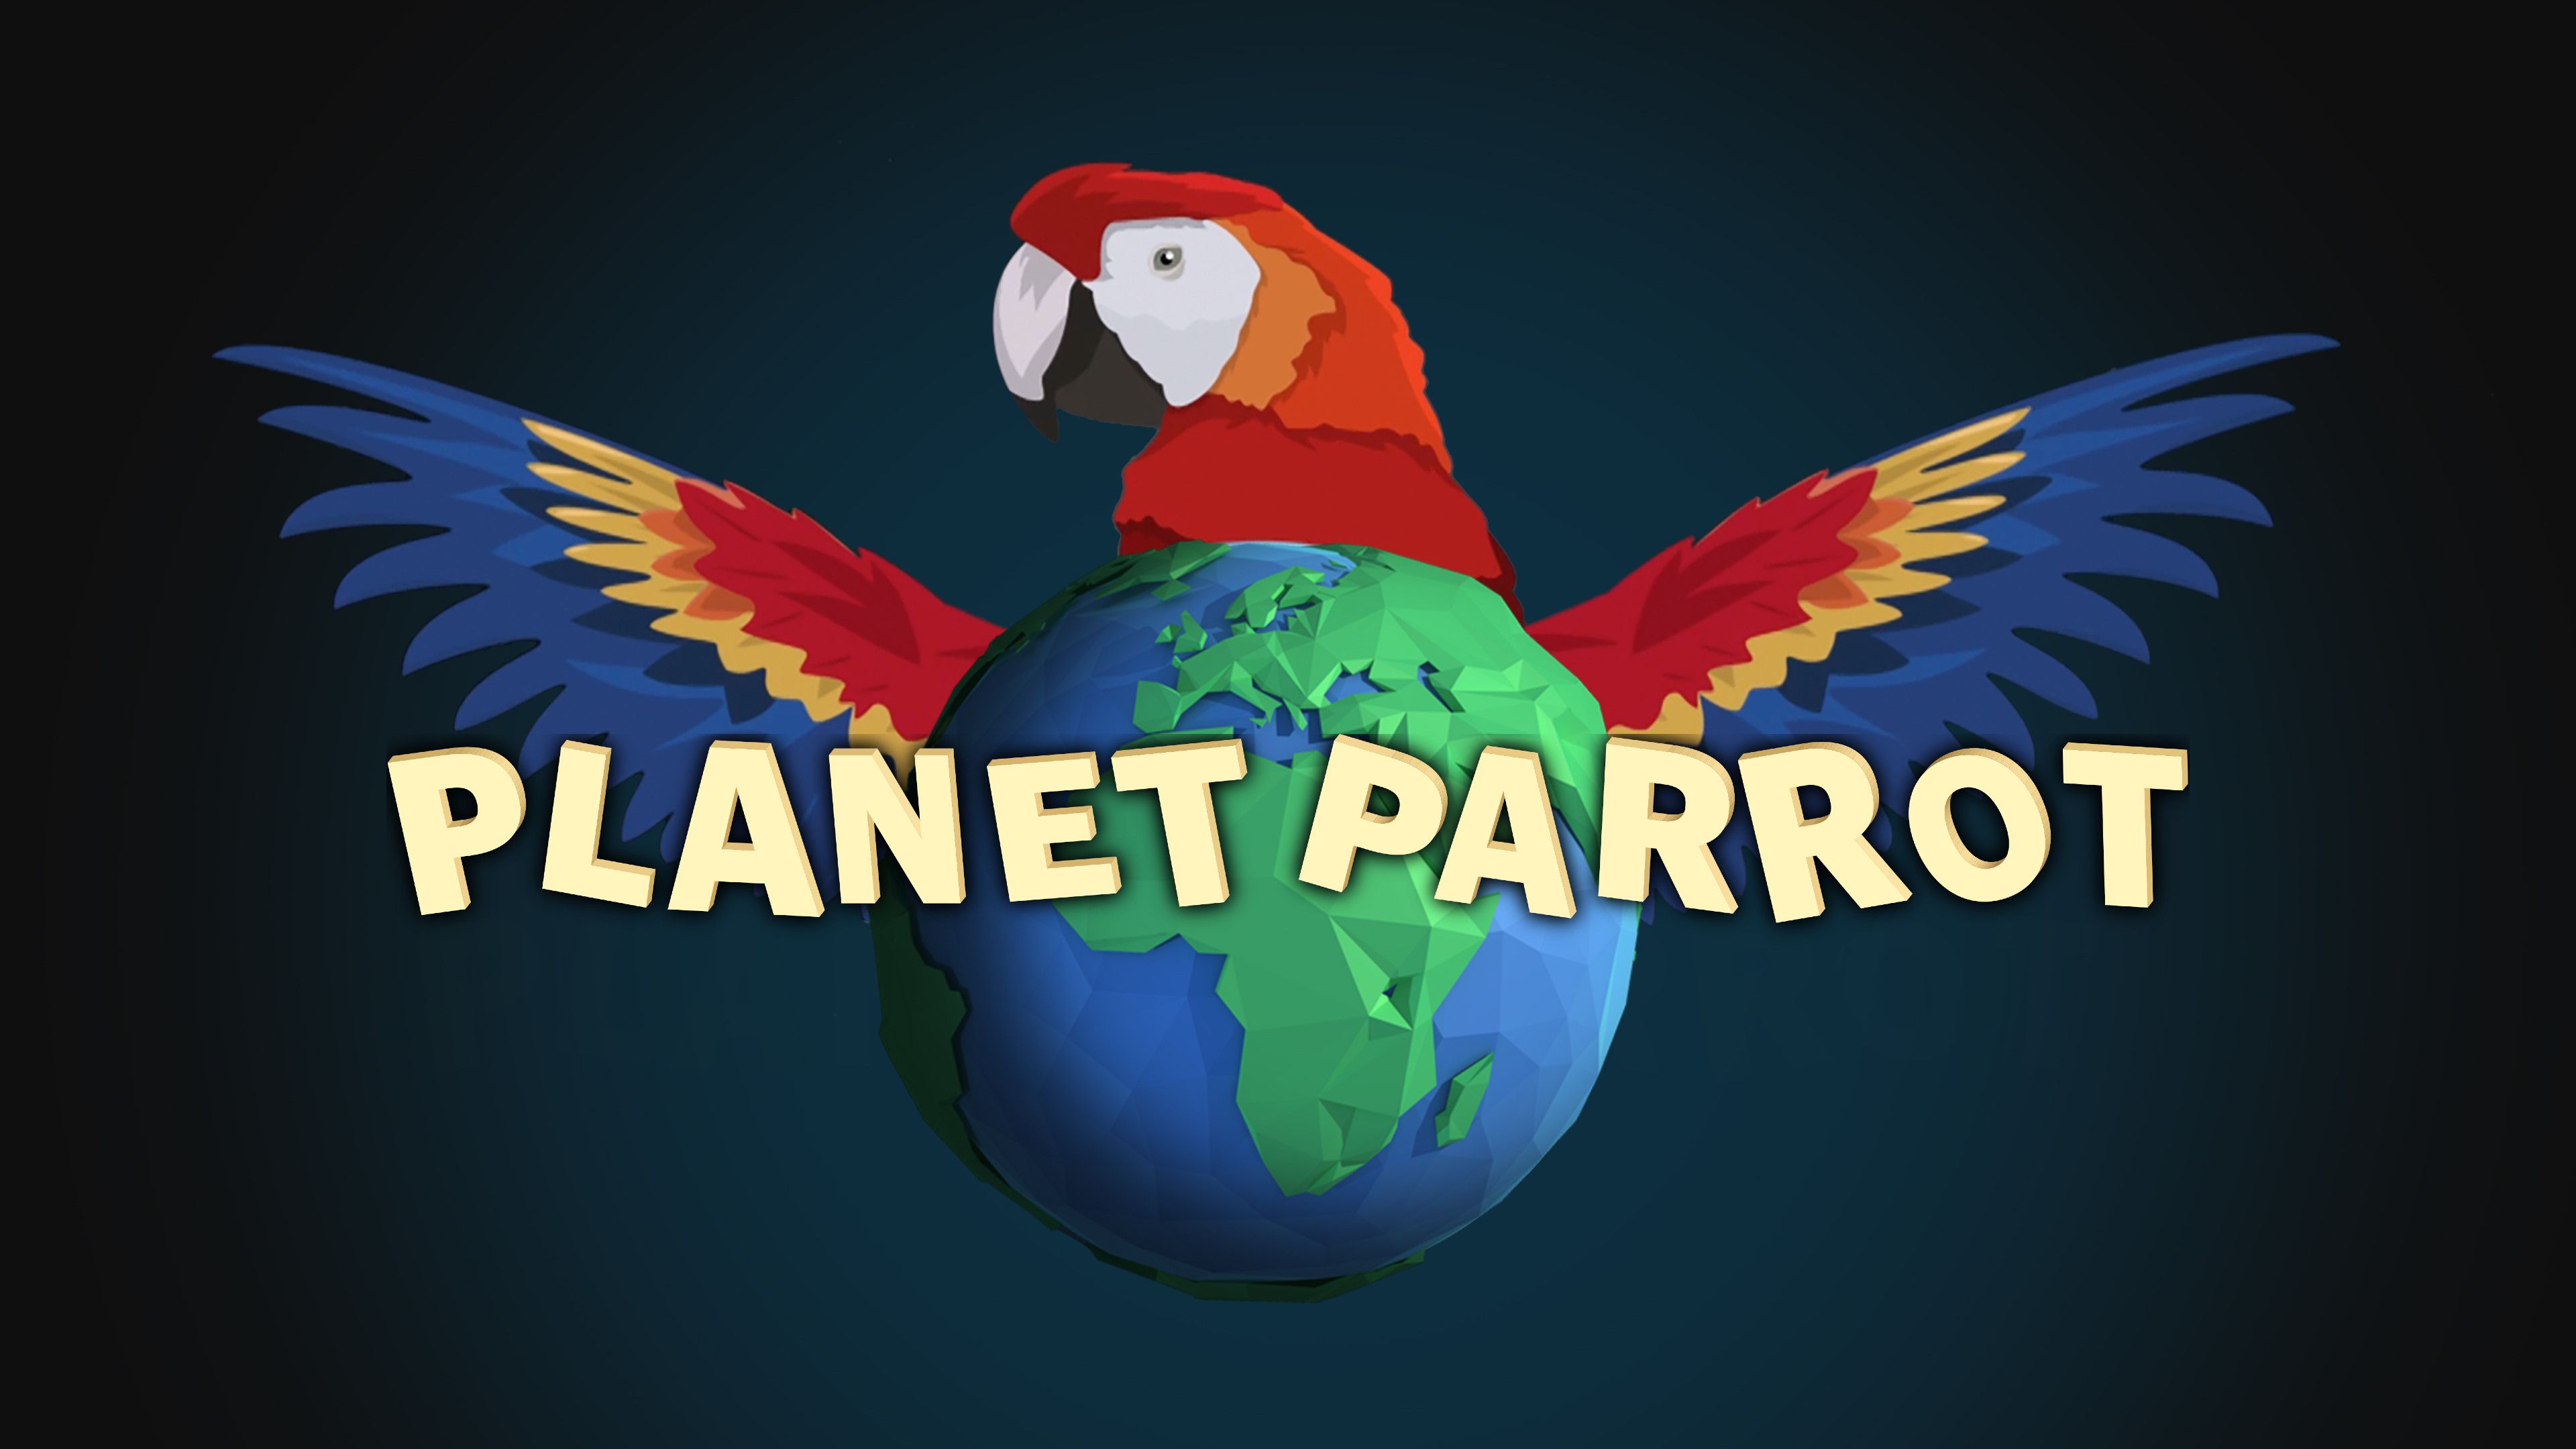 Planet Parrot